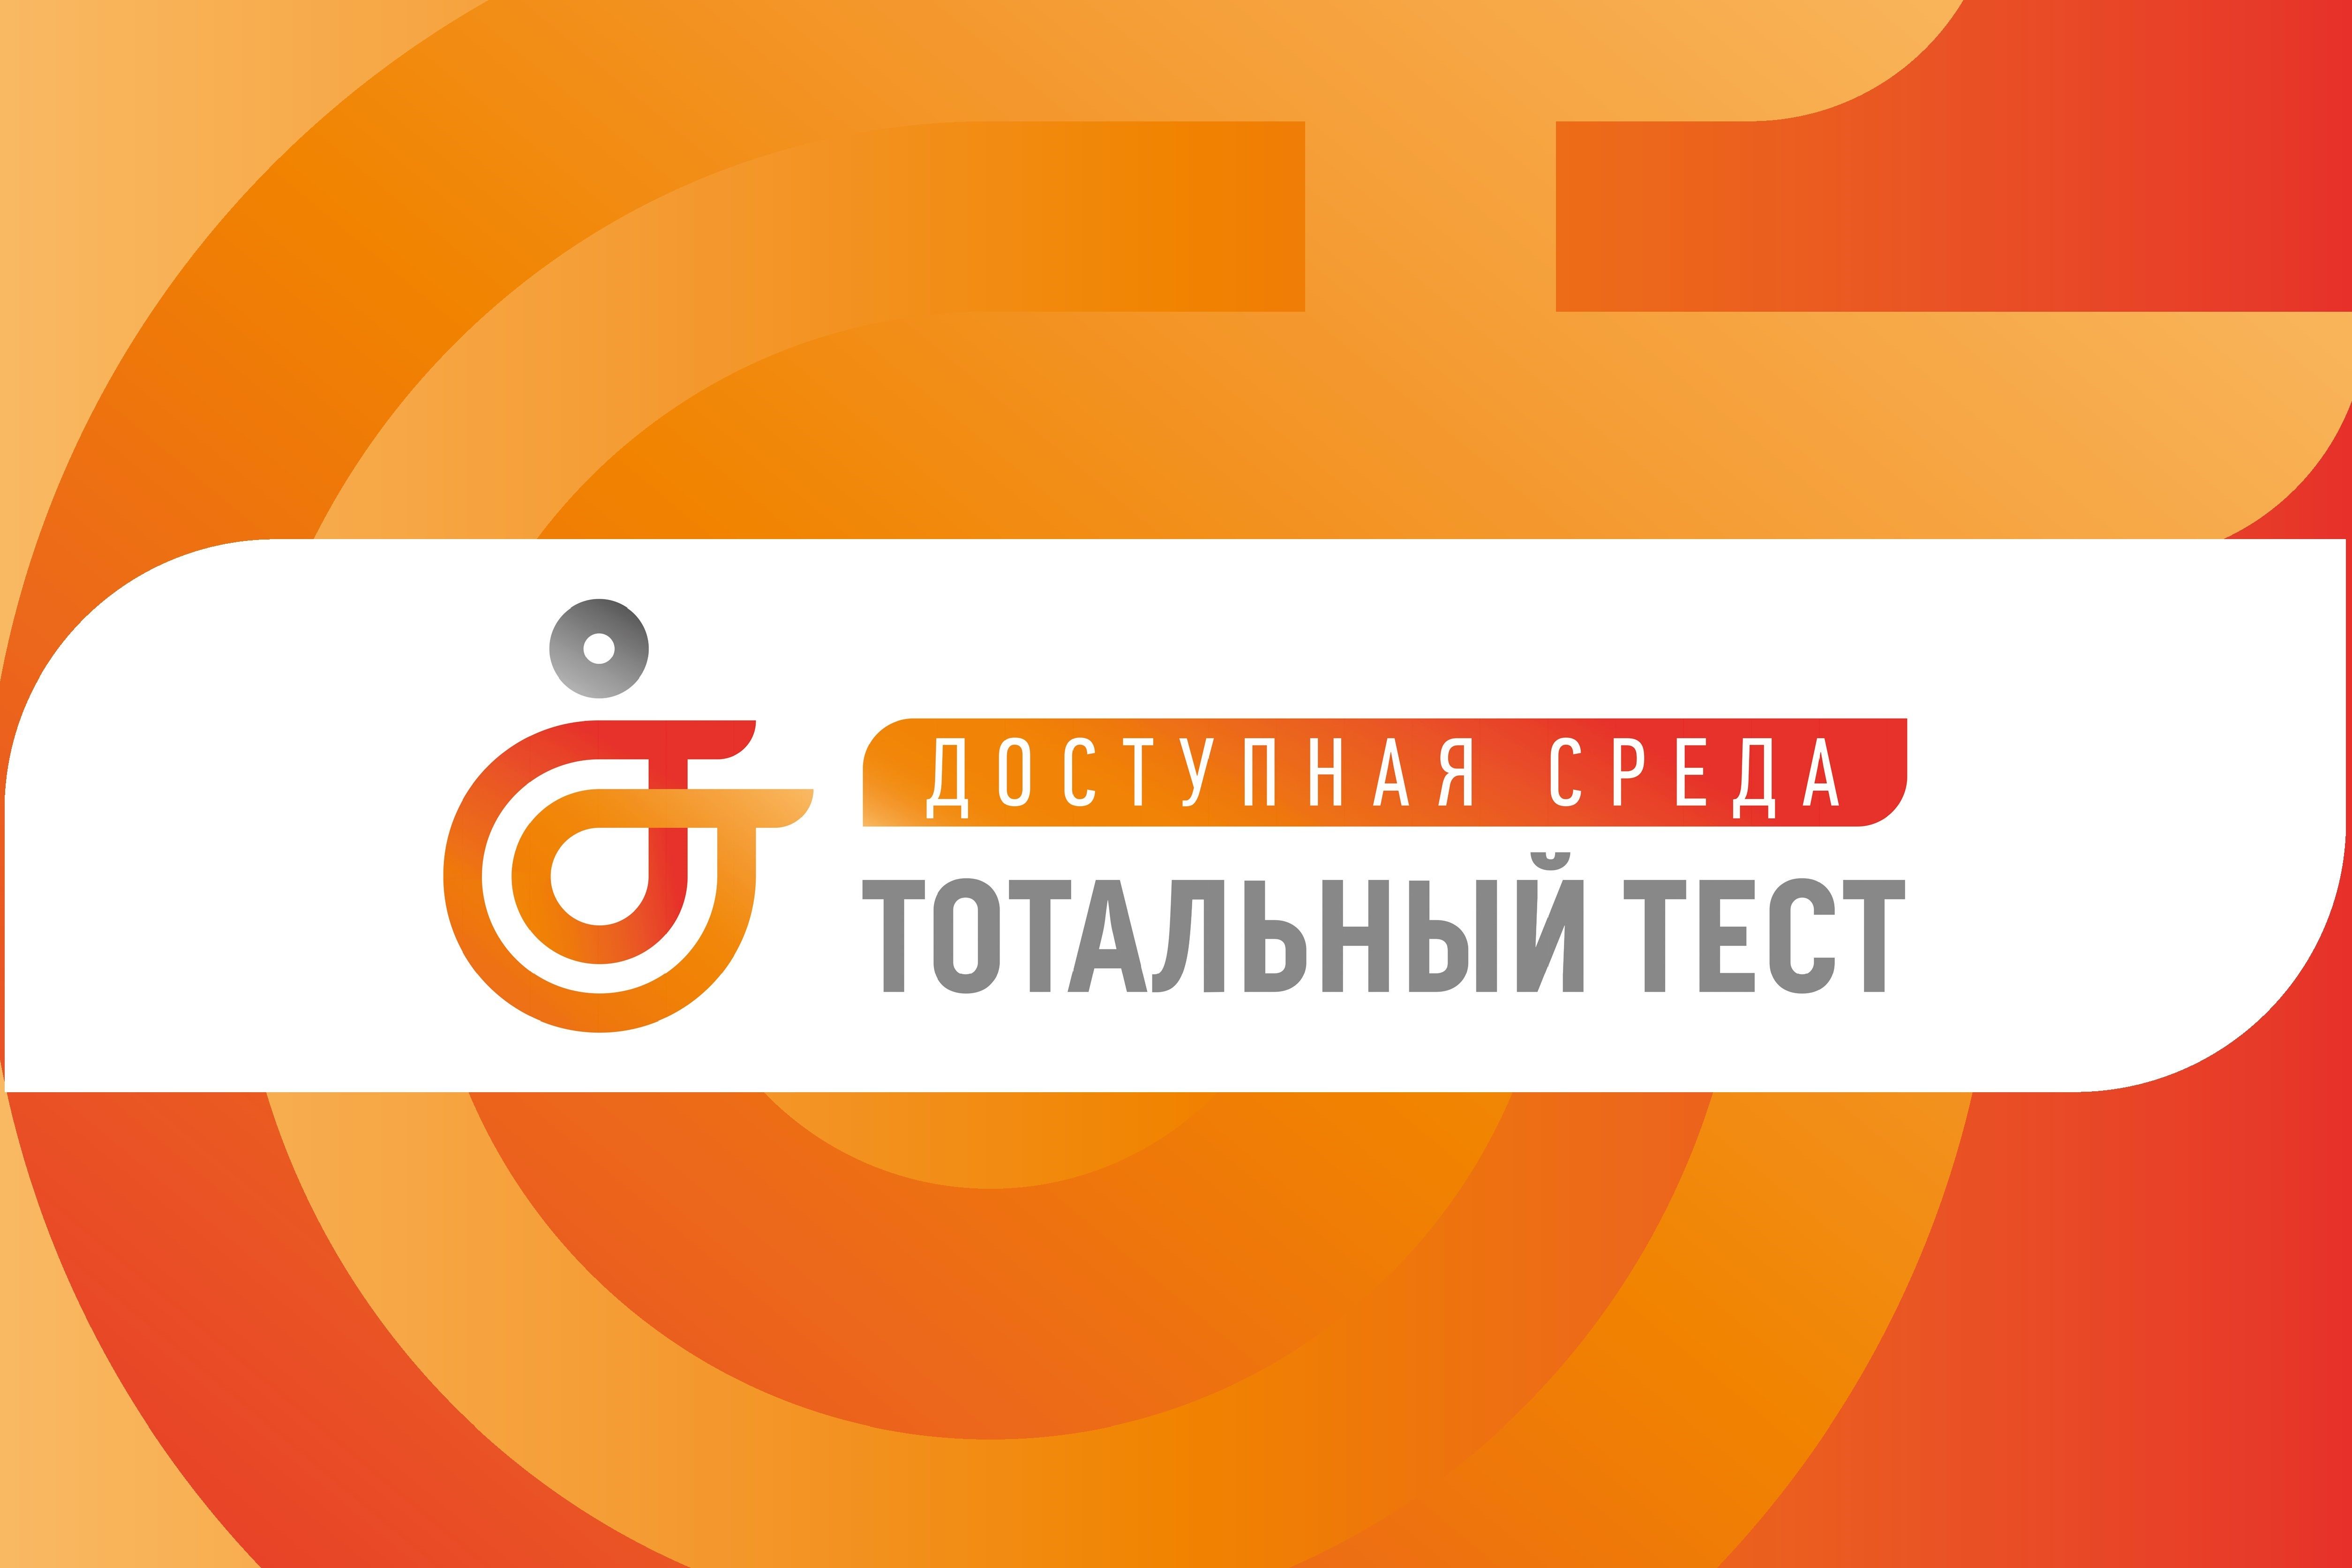 1 декабря 2023 года, накануне Международного дня инвалидов, стартует Общероссийская акция Тотальный тест «Доступная среда», призванная привлечь внимание к правам и потребностям людей с инвалидностью.